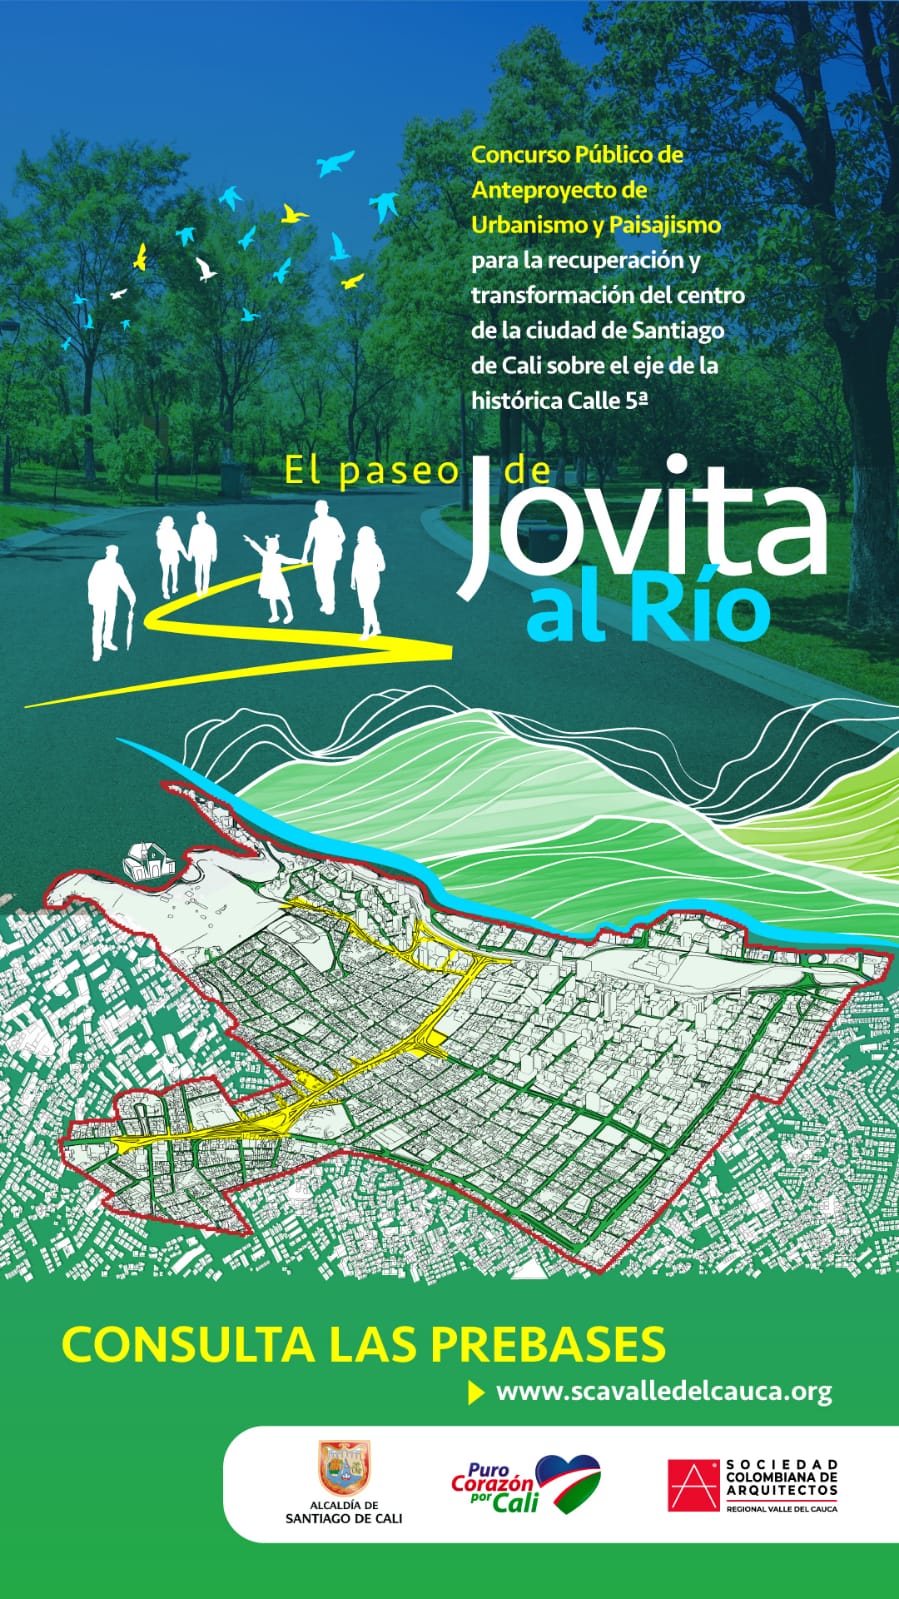 Lanzamiento de las Prebases del concurso de arquitectura del Proyecto Paseo Jovita al Río